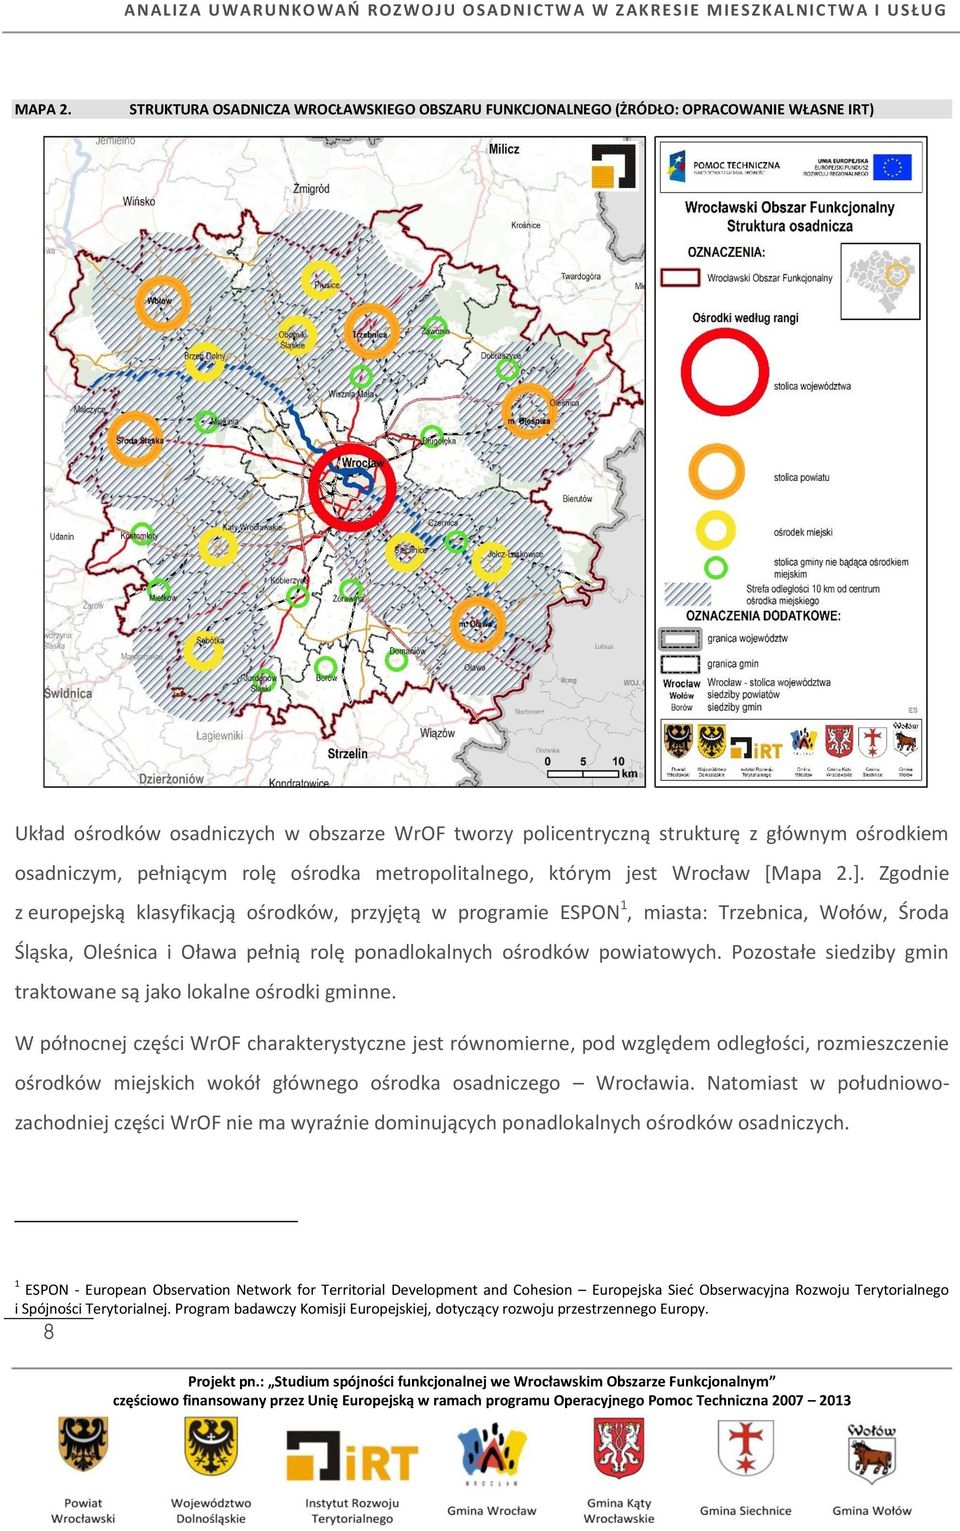 pełniącym rolę ośrodka metropolitalnego, którym jest Wrocław [Mapa 2.].